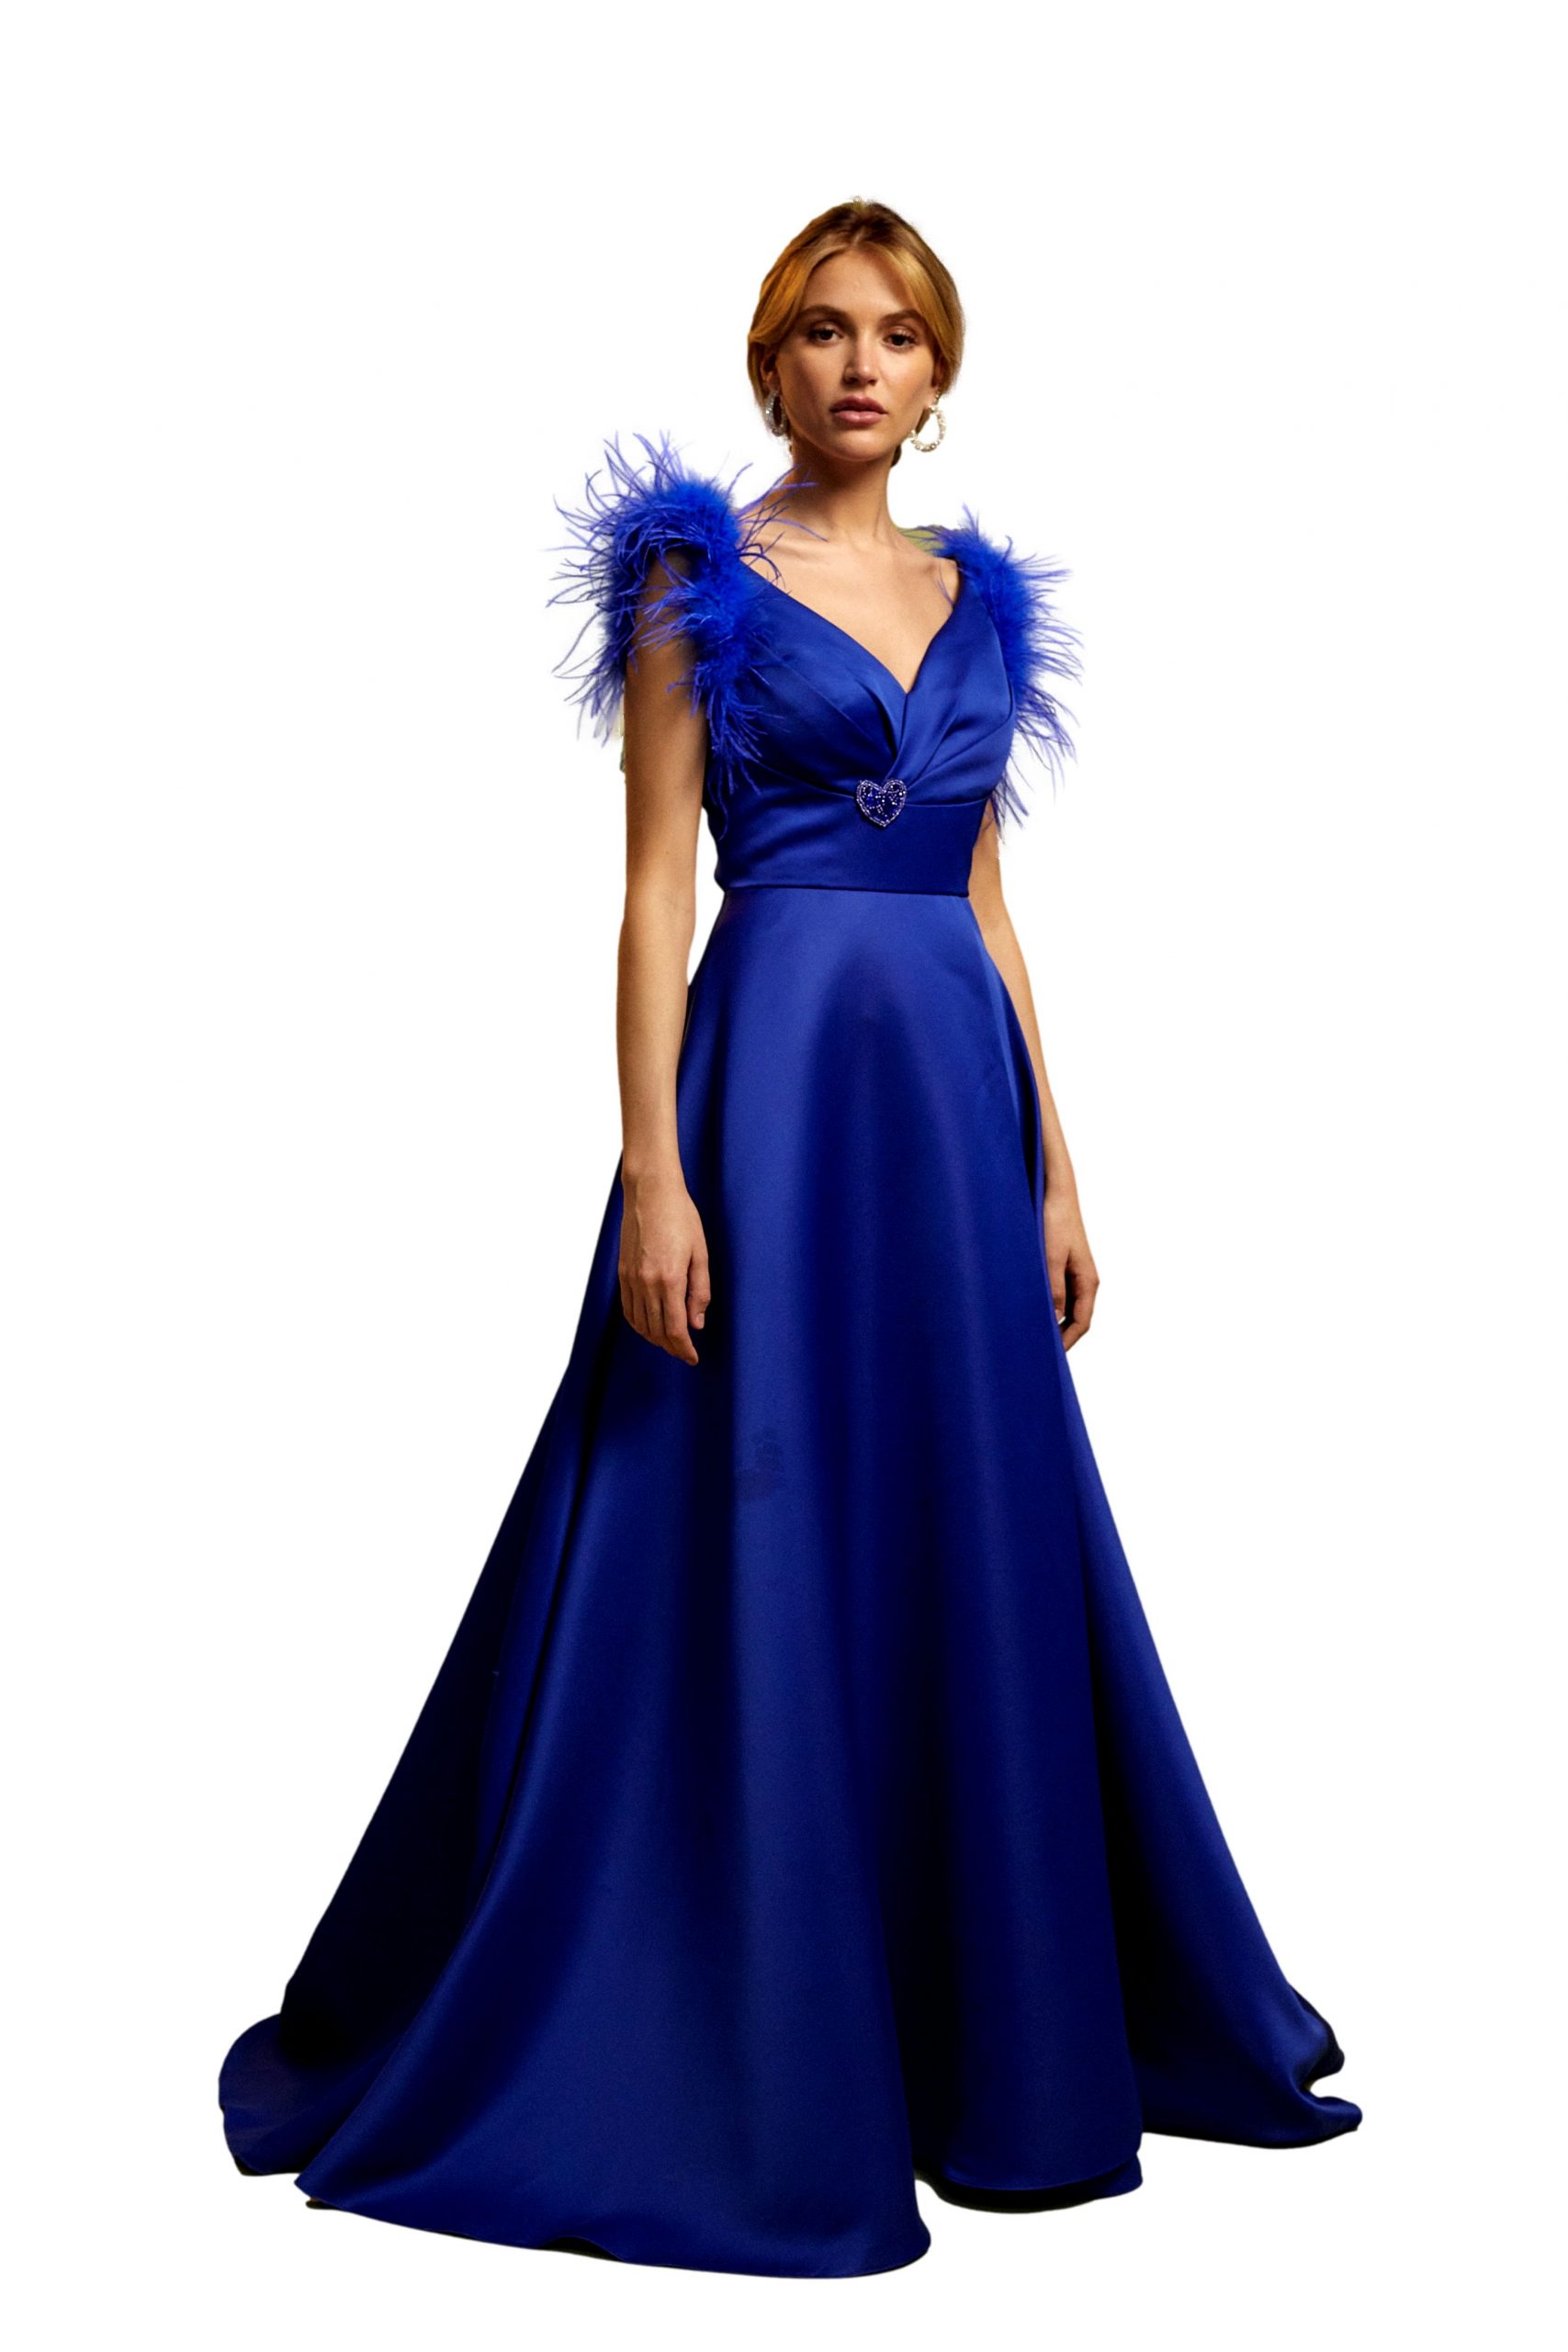 Vestido color azul electrico, corte princesa, con flores 3D y detalles de  brillantes, si buscas vestido azul, este hermoso diseño te hara…